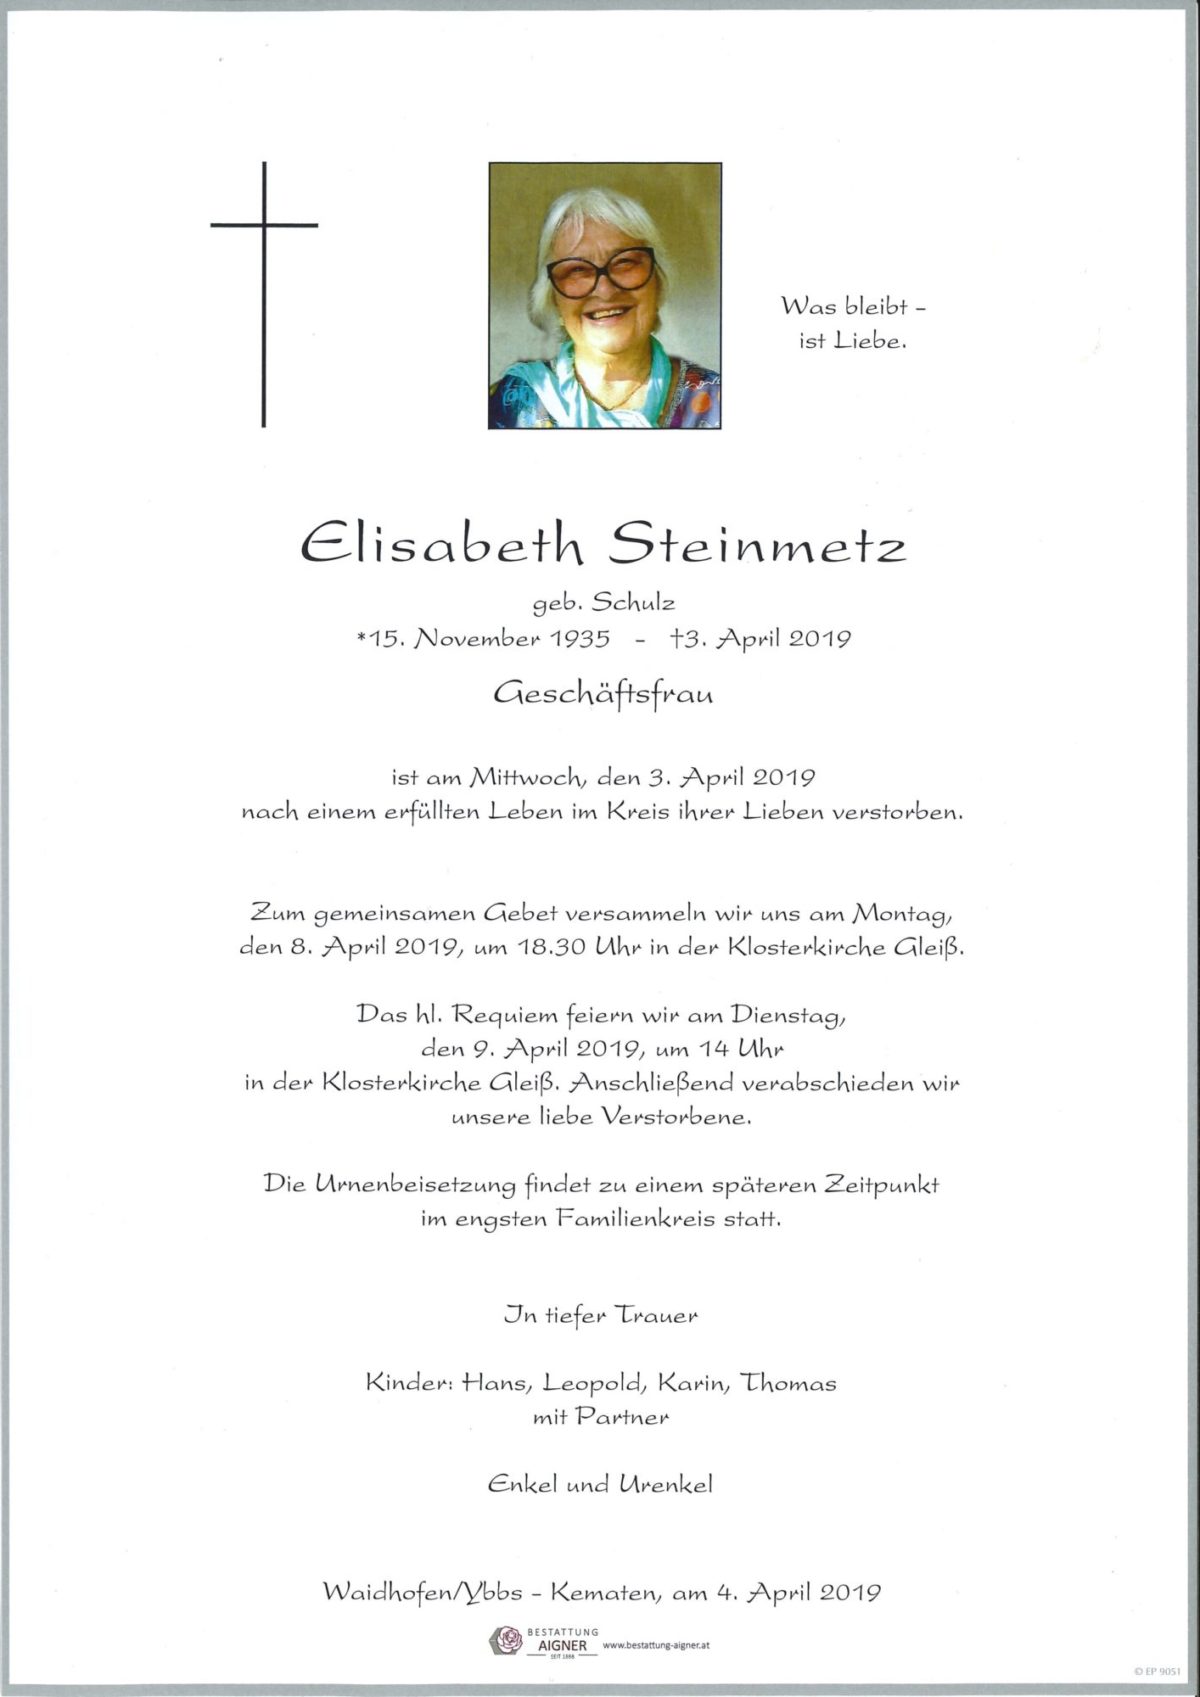 Elisabeth Steinmetz